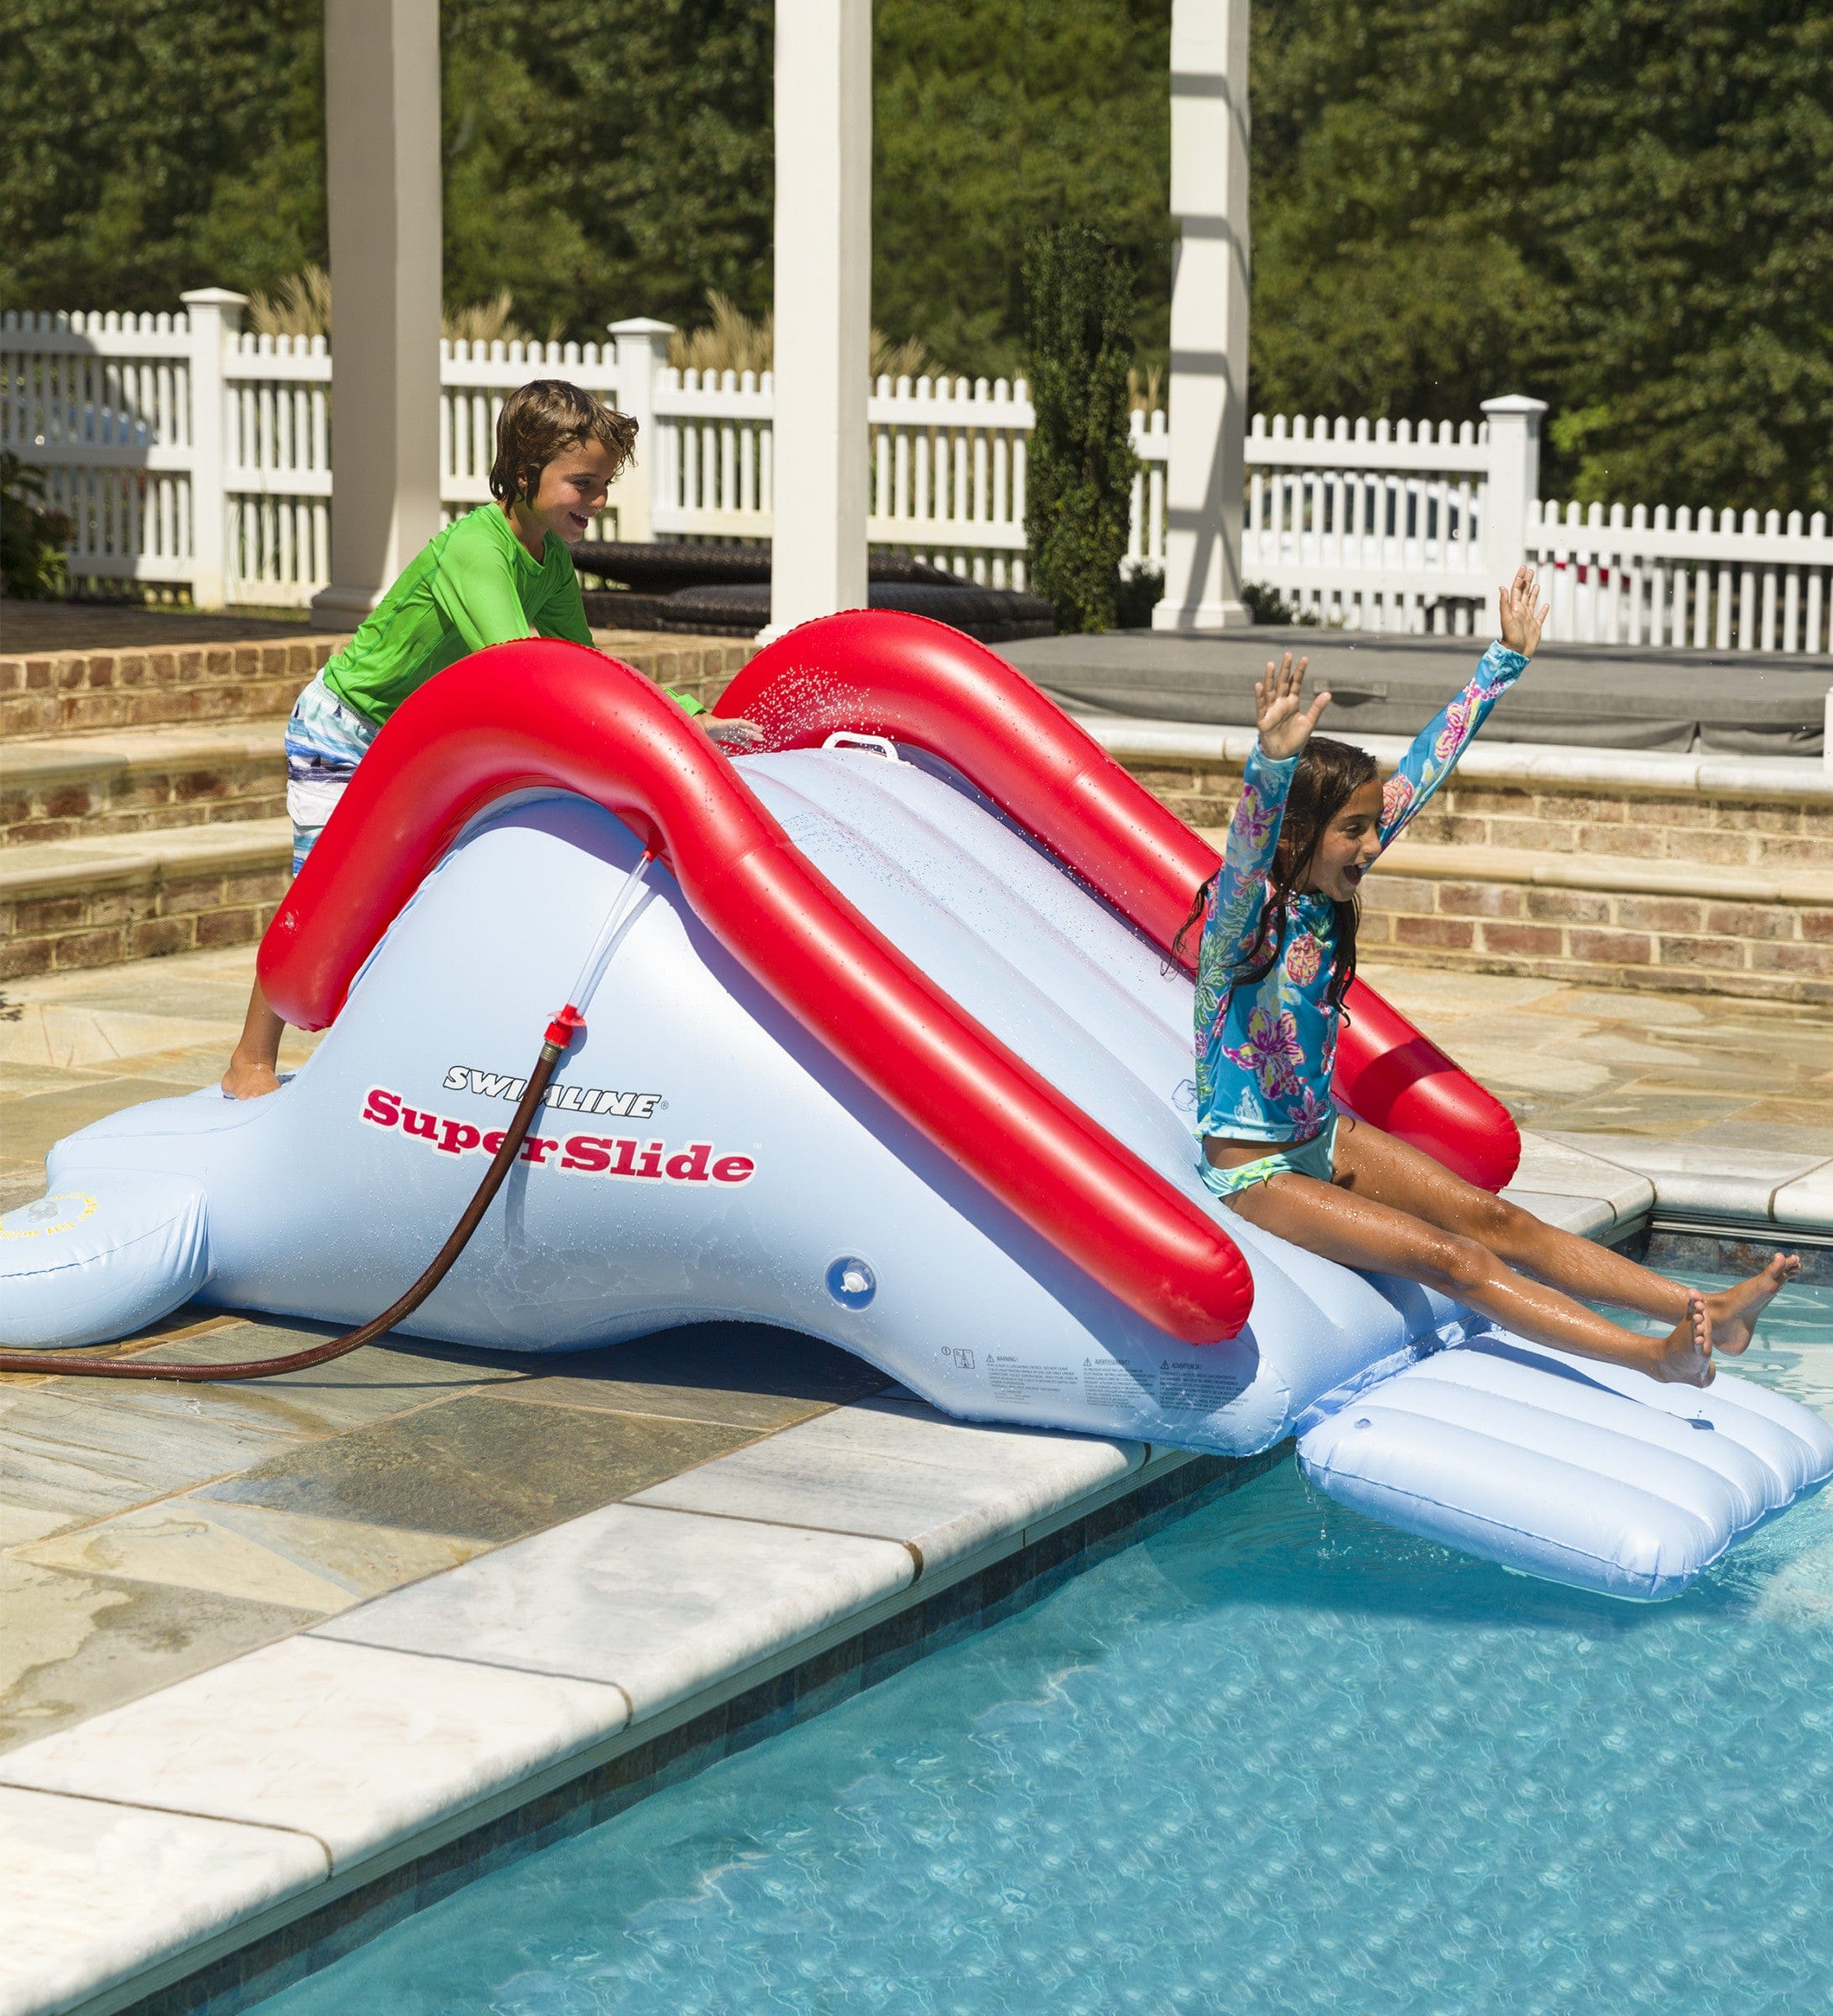 ぴったり製品 Swimline Super Slide Inflatable Pool Toy 水遊び ENTEIDRICOCAMPANO